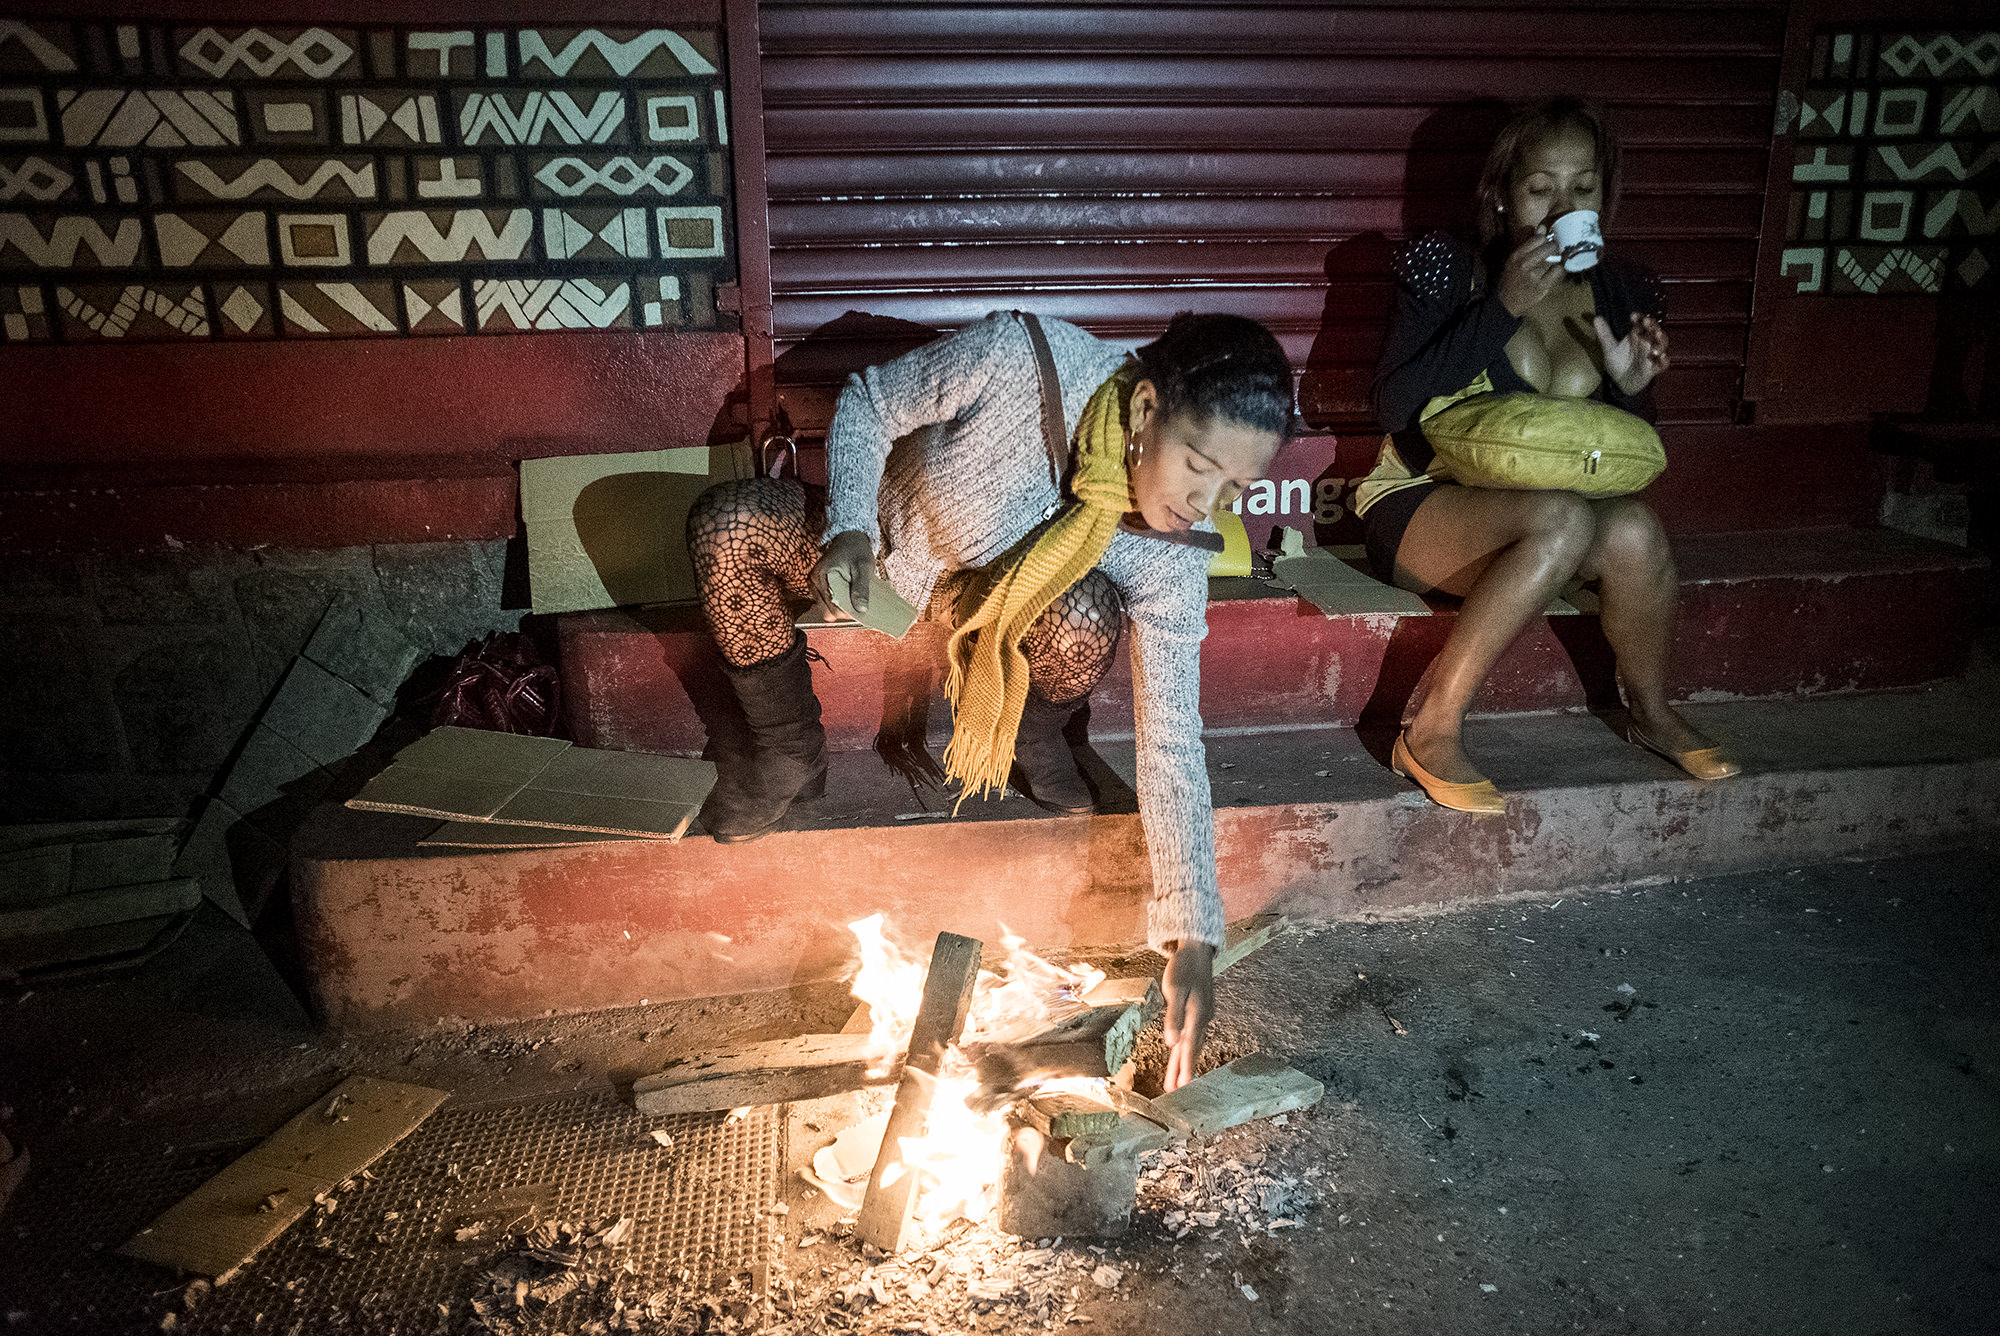 Digital Patrik Wallner Antananarivo Prostitute Fire LOWQ 2000P